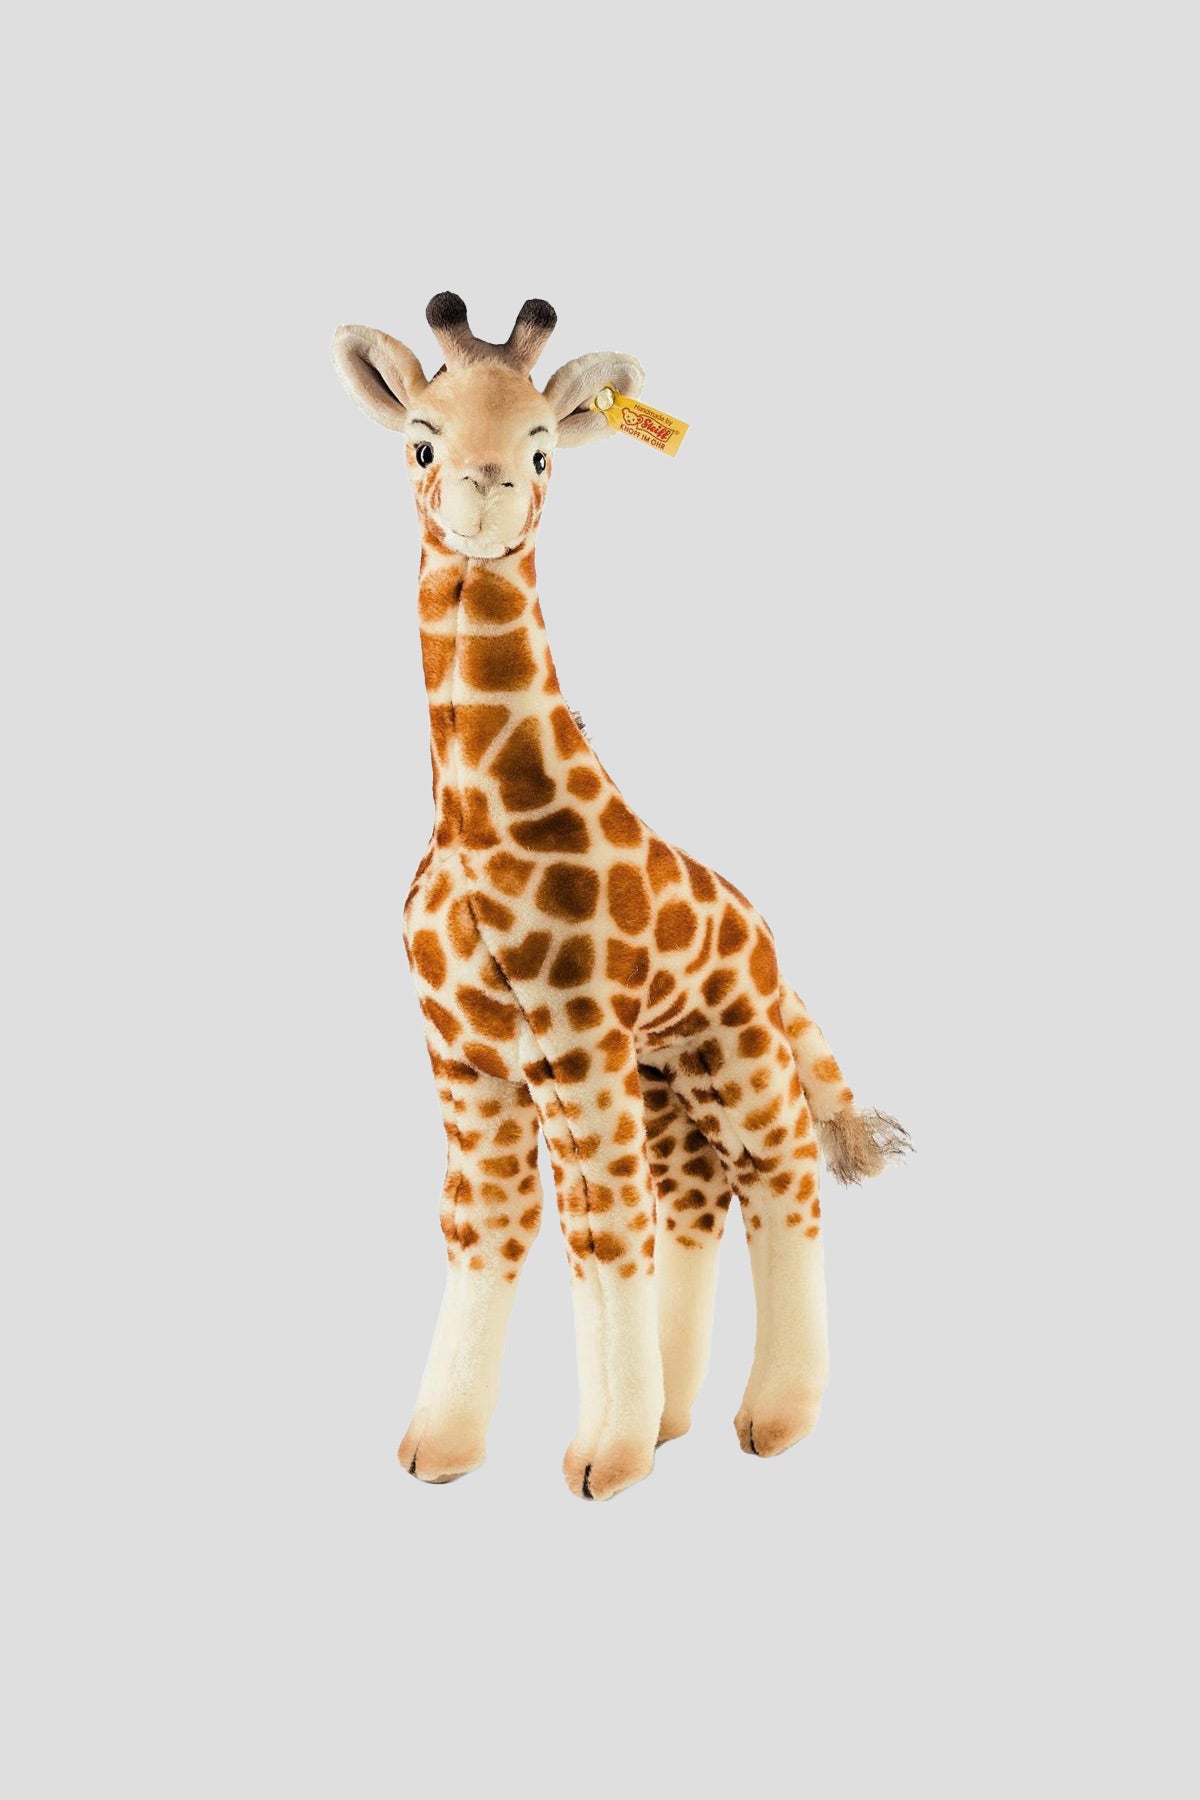 Bendy Giraffe